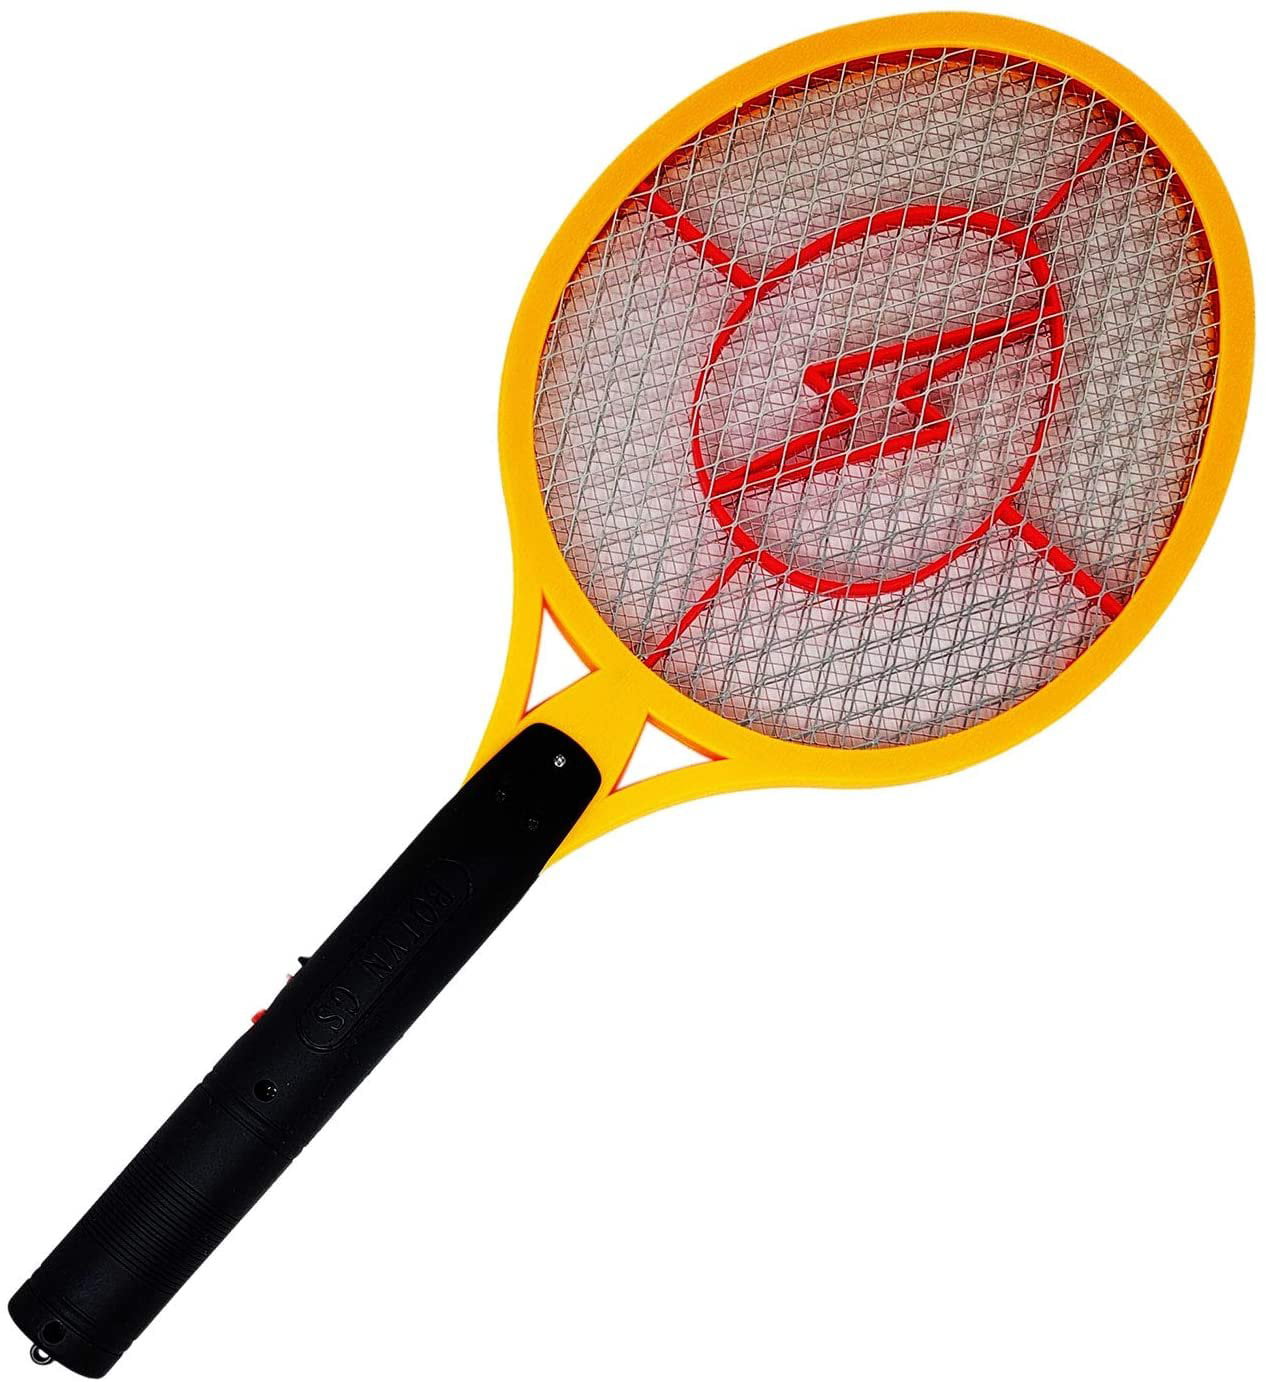 KORAMZI F-4 Best Electric Mosquito Swatter Racket For Indoor And Outdoor 3 la... 